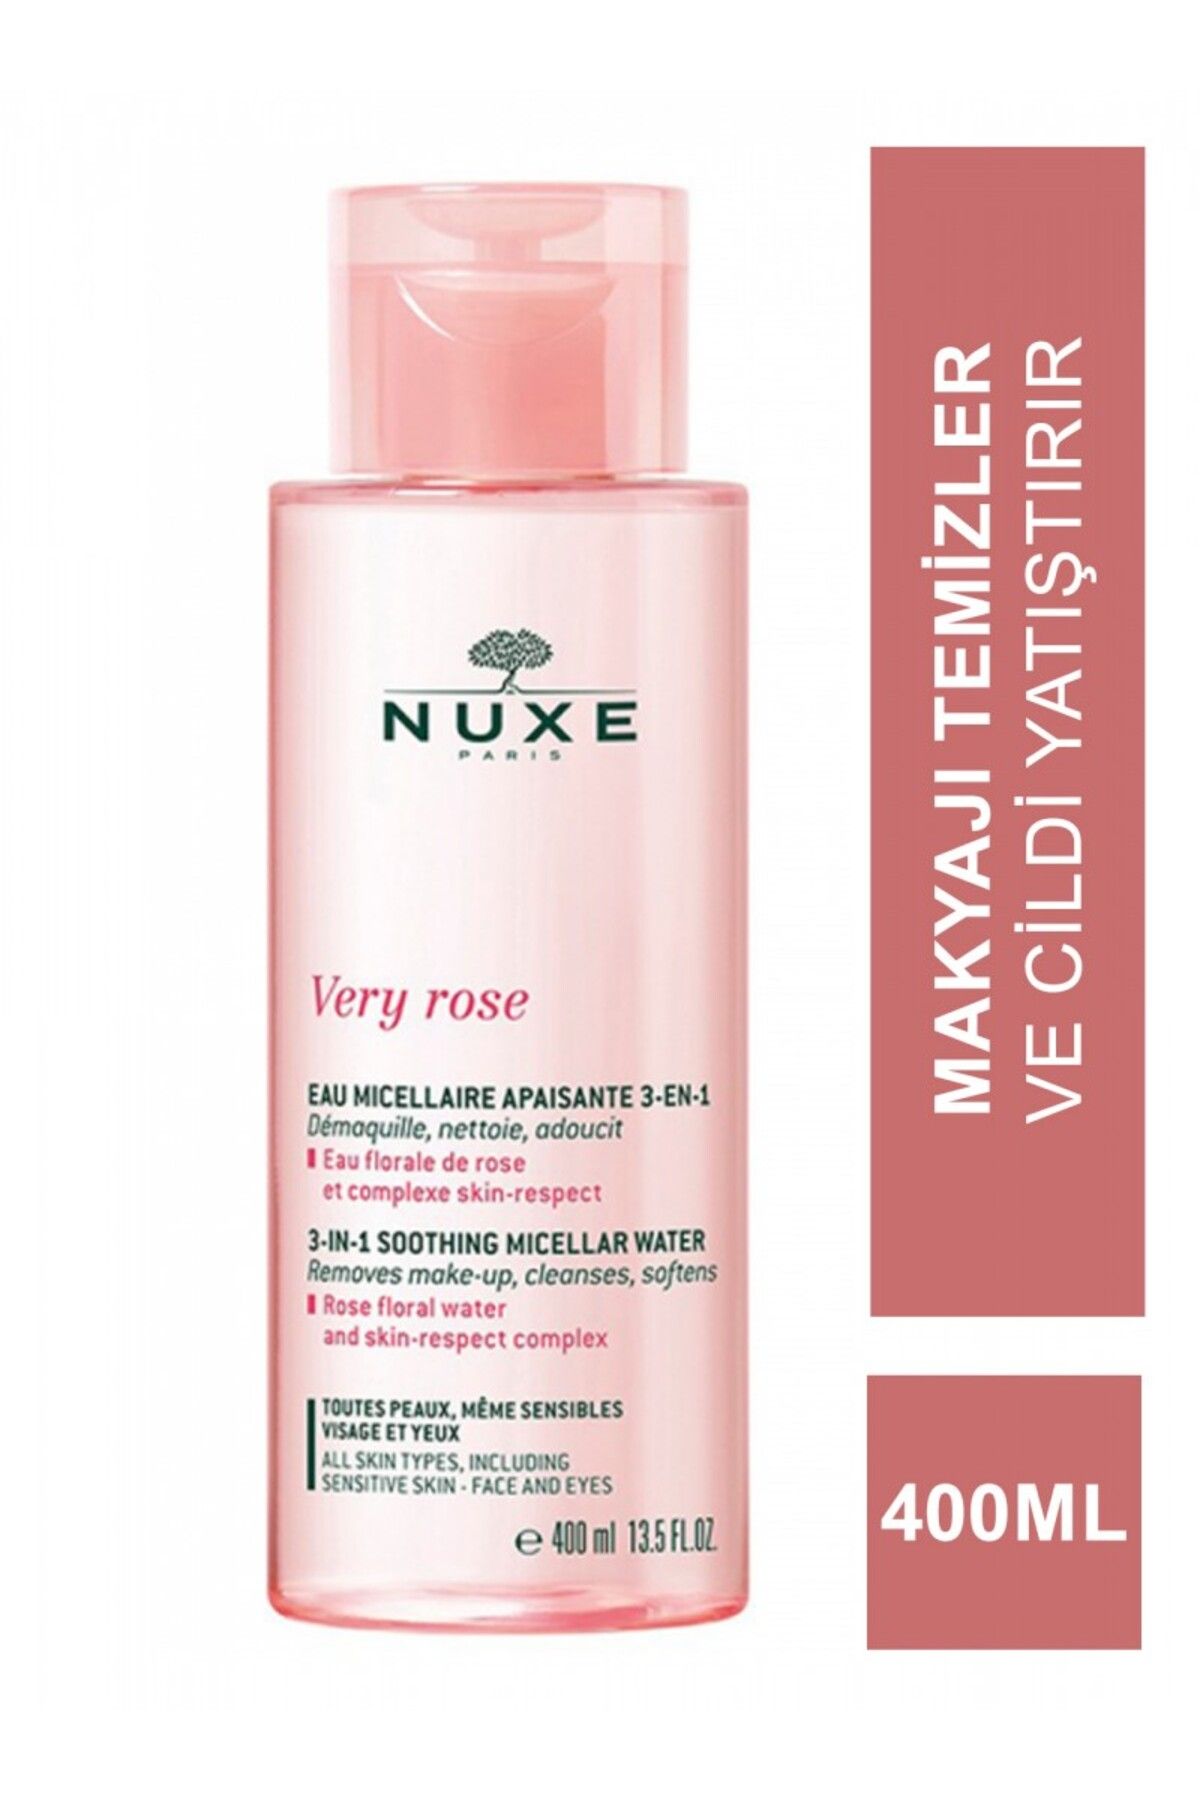 Nuxe Very Rose - 3' ü 1 Arada Nemlendirici Yüz,Göz,Dudak İçin Misel Temizleme Suyu 400 ml Tüm Ciltler